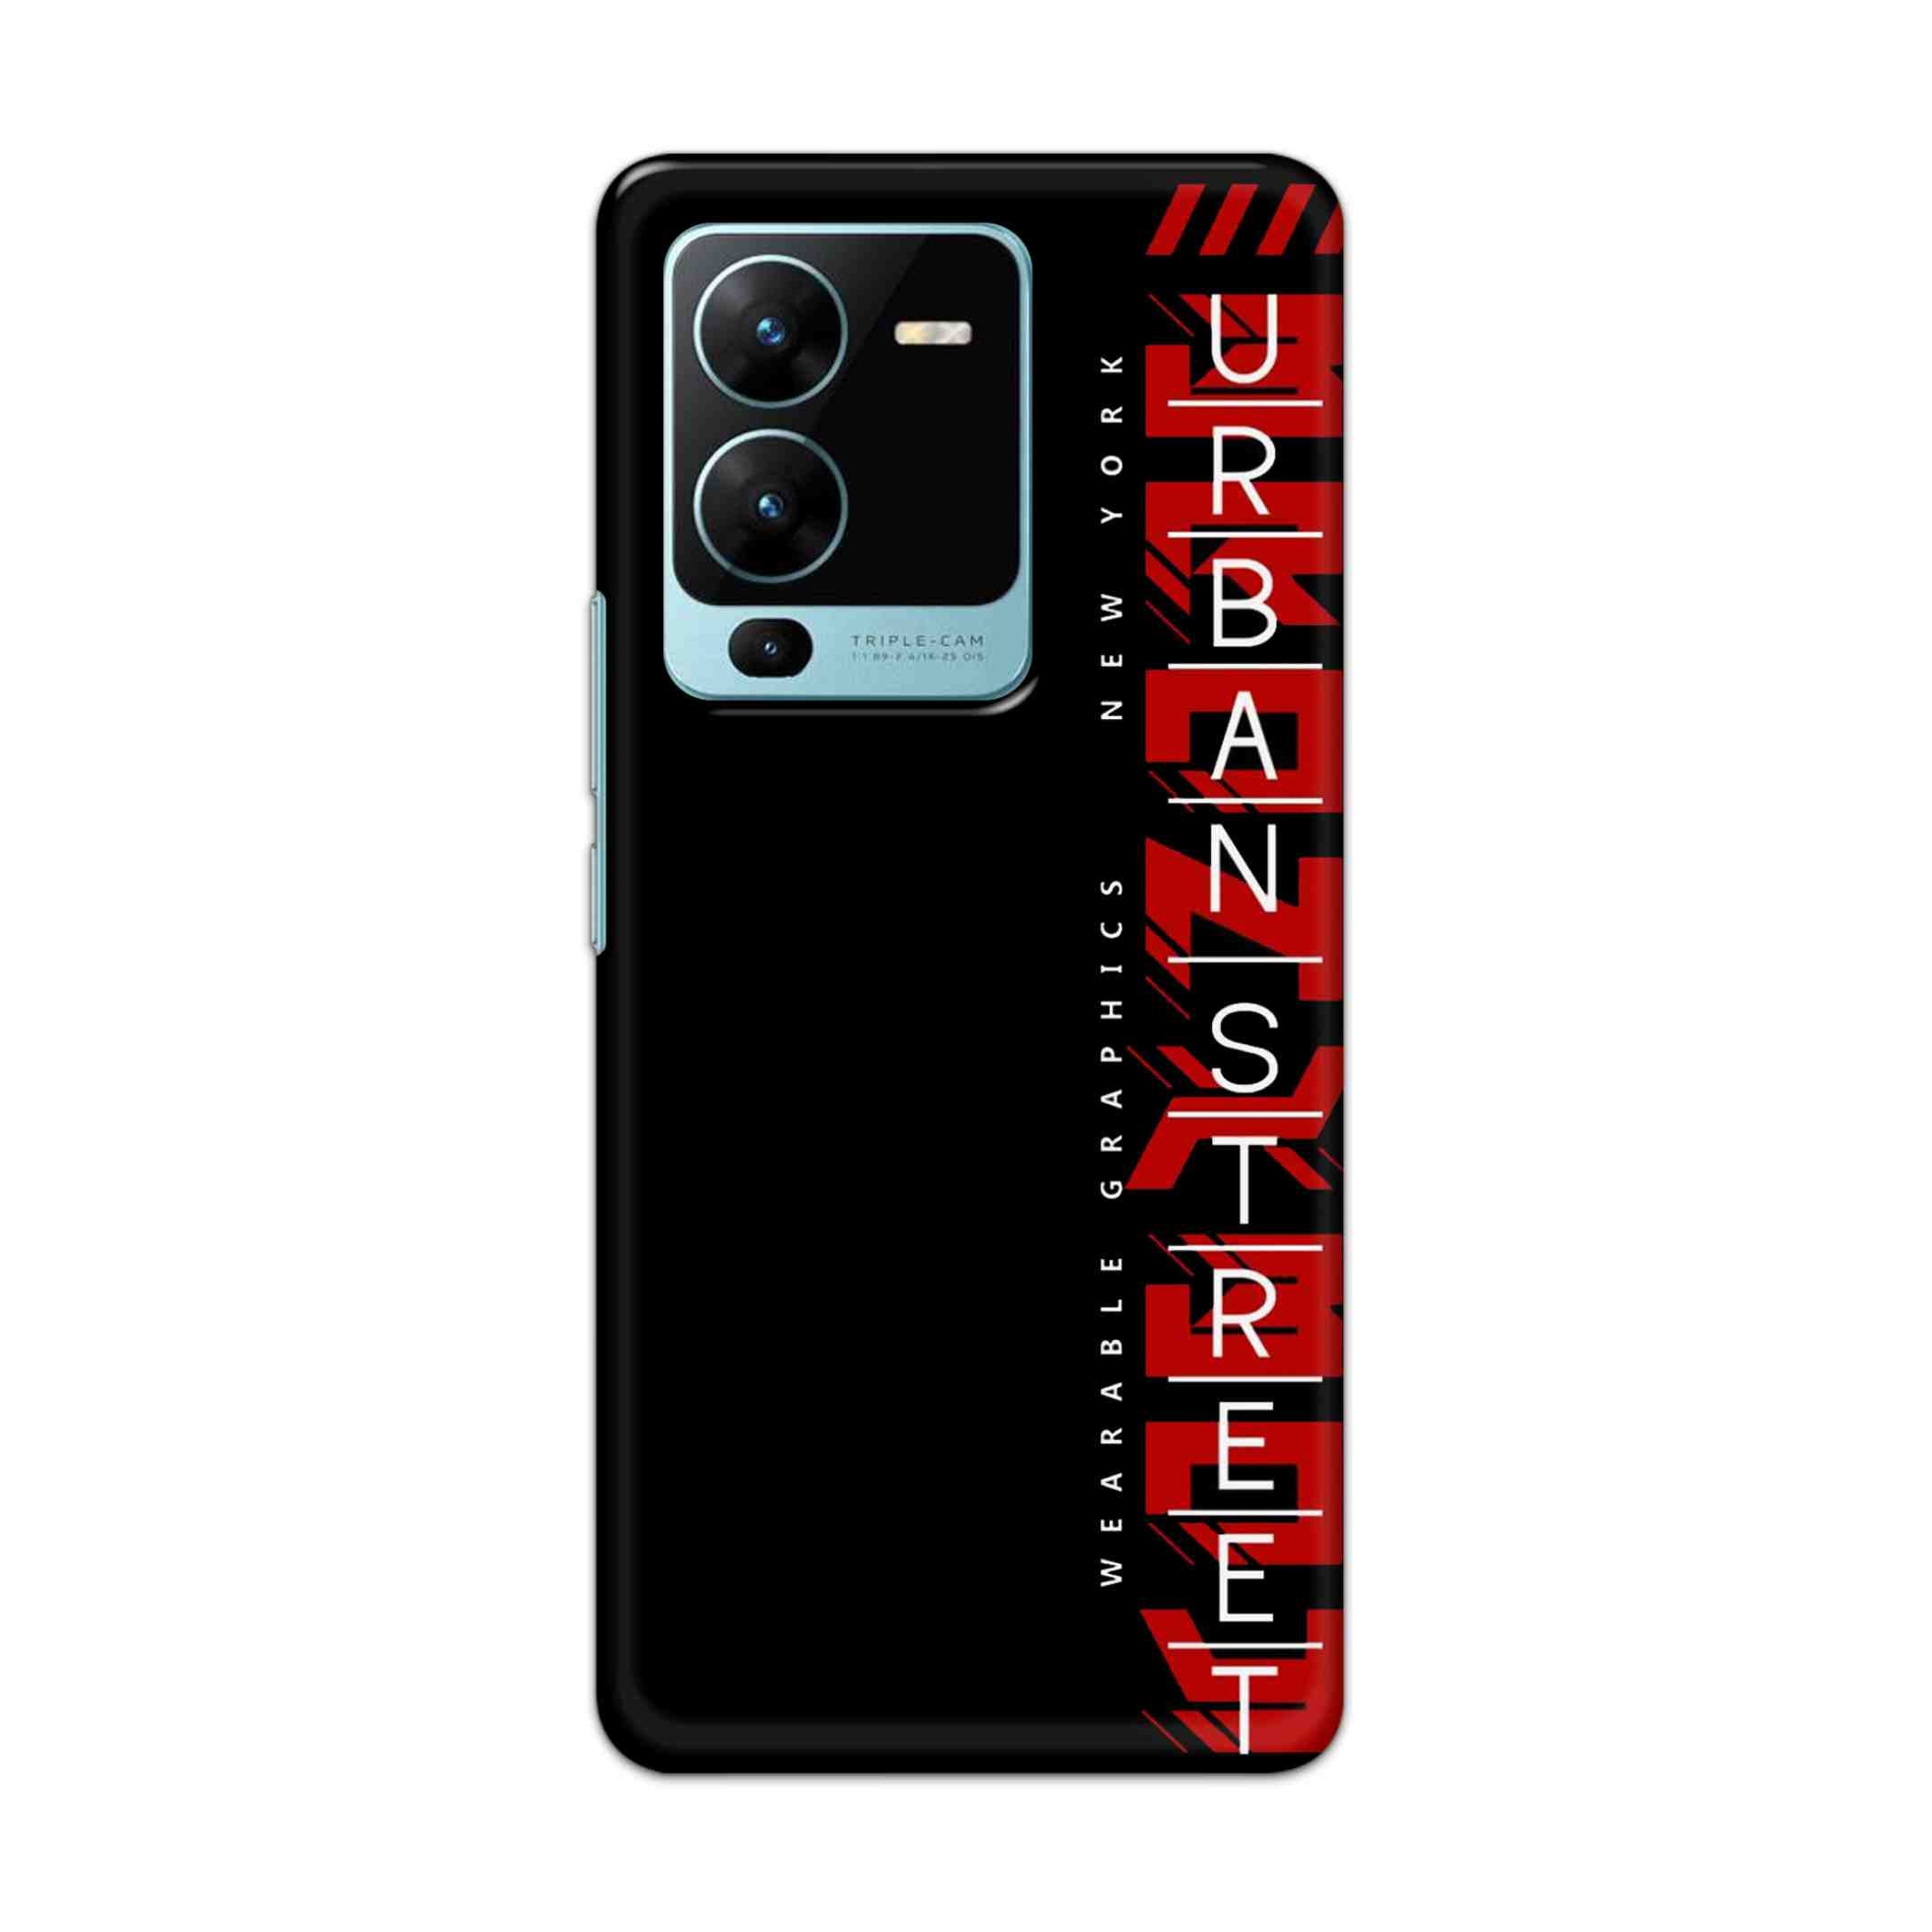 Buy Urban Street Hard Back Mobile Phone Case Cover For Vivo V25 Pro Online